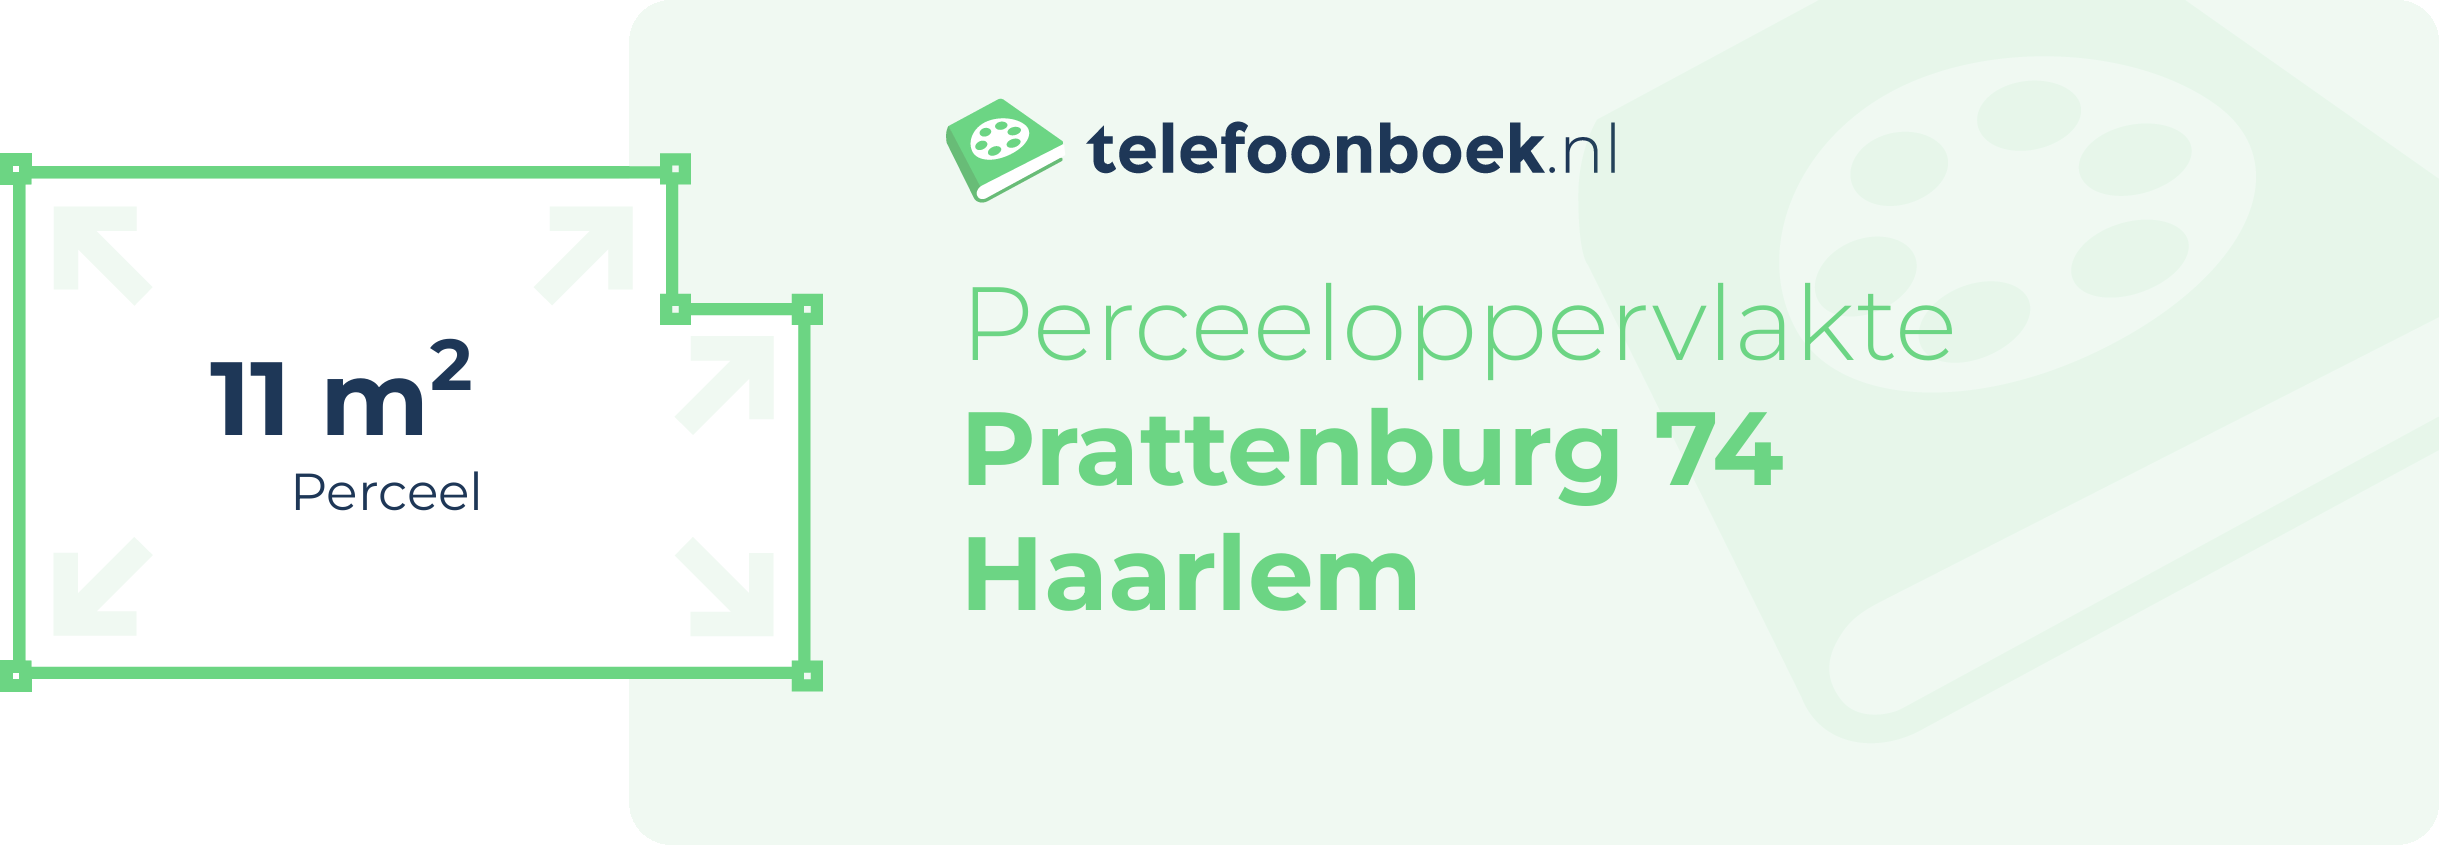 Perceeloppervlakte Prattenburg 74 Haarlem